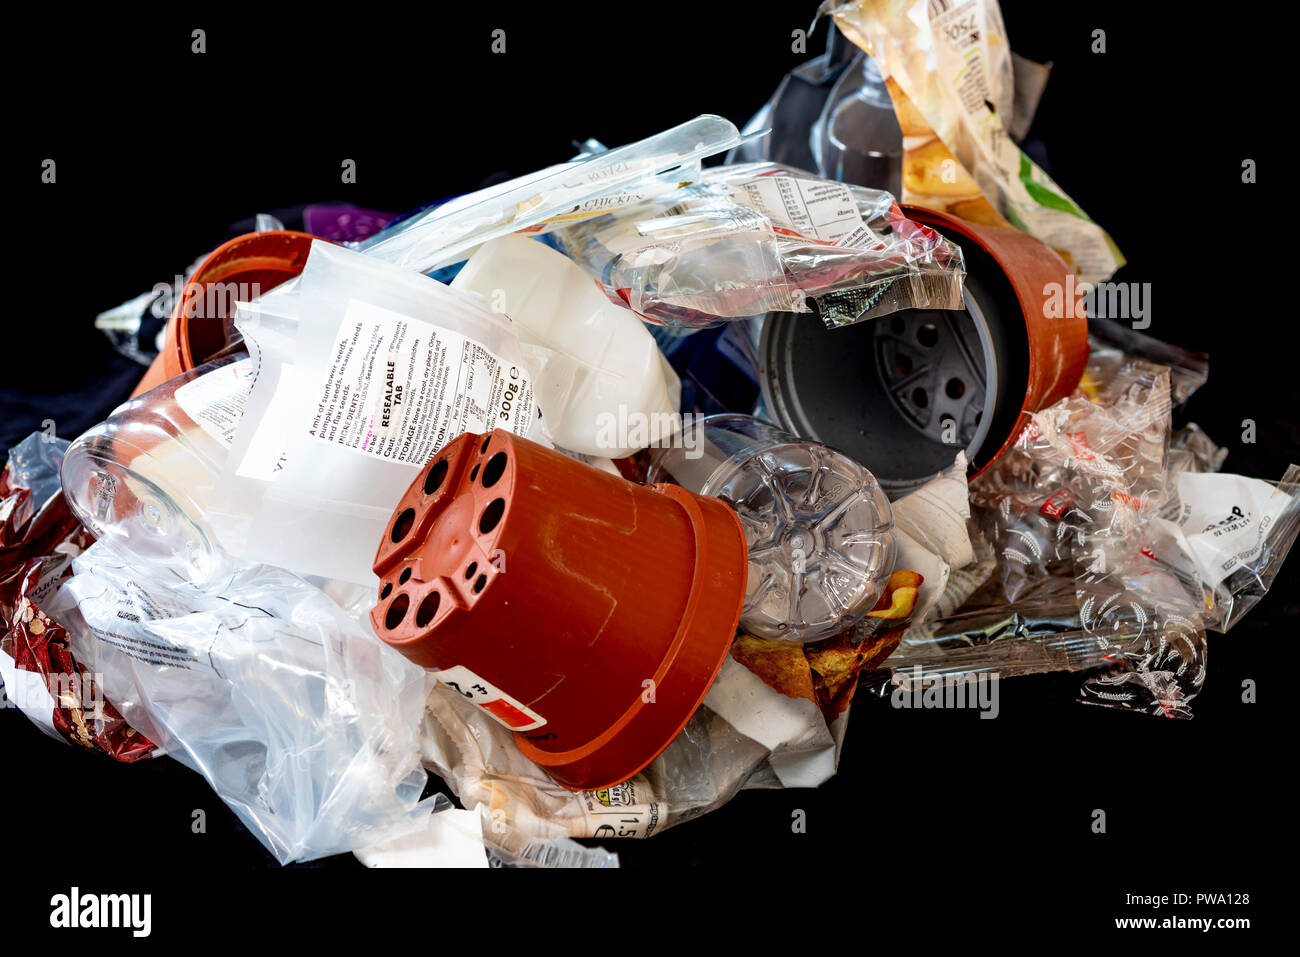 Pila di diverse materie plastiche, alcuni sono riciclabili alcuni non. Foto Stock